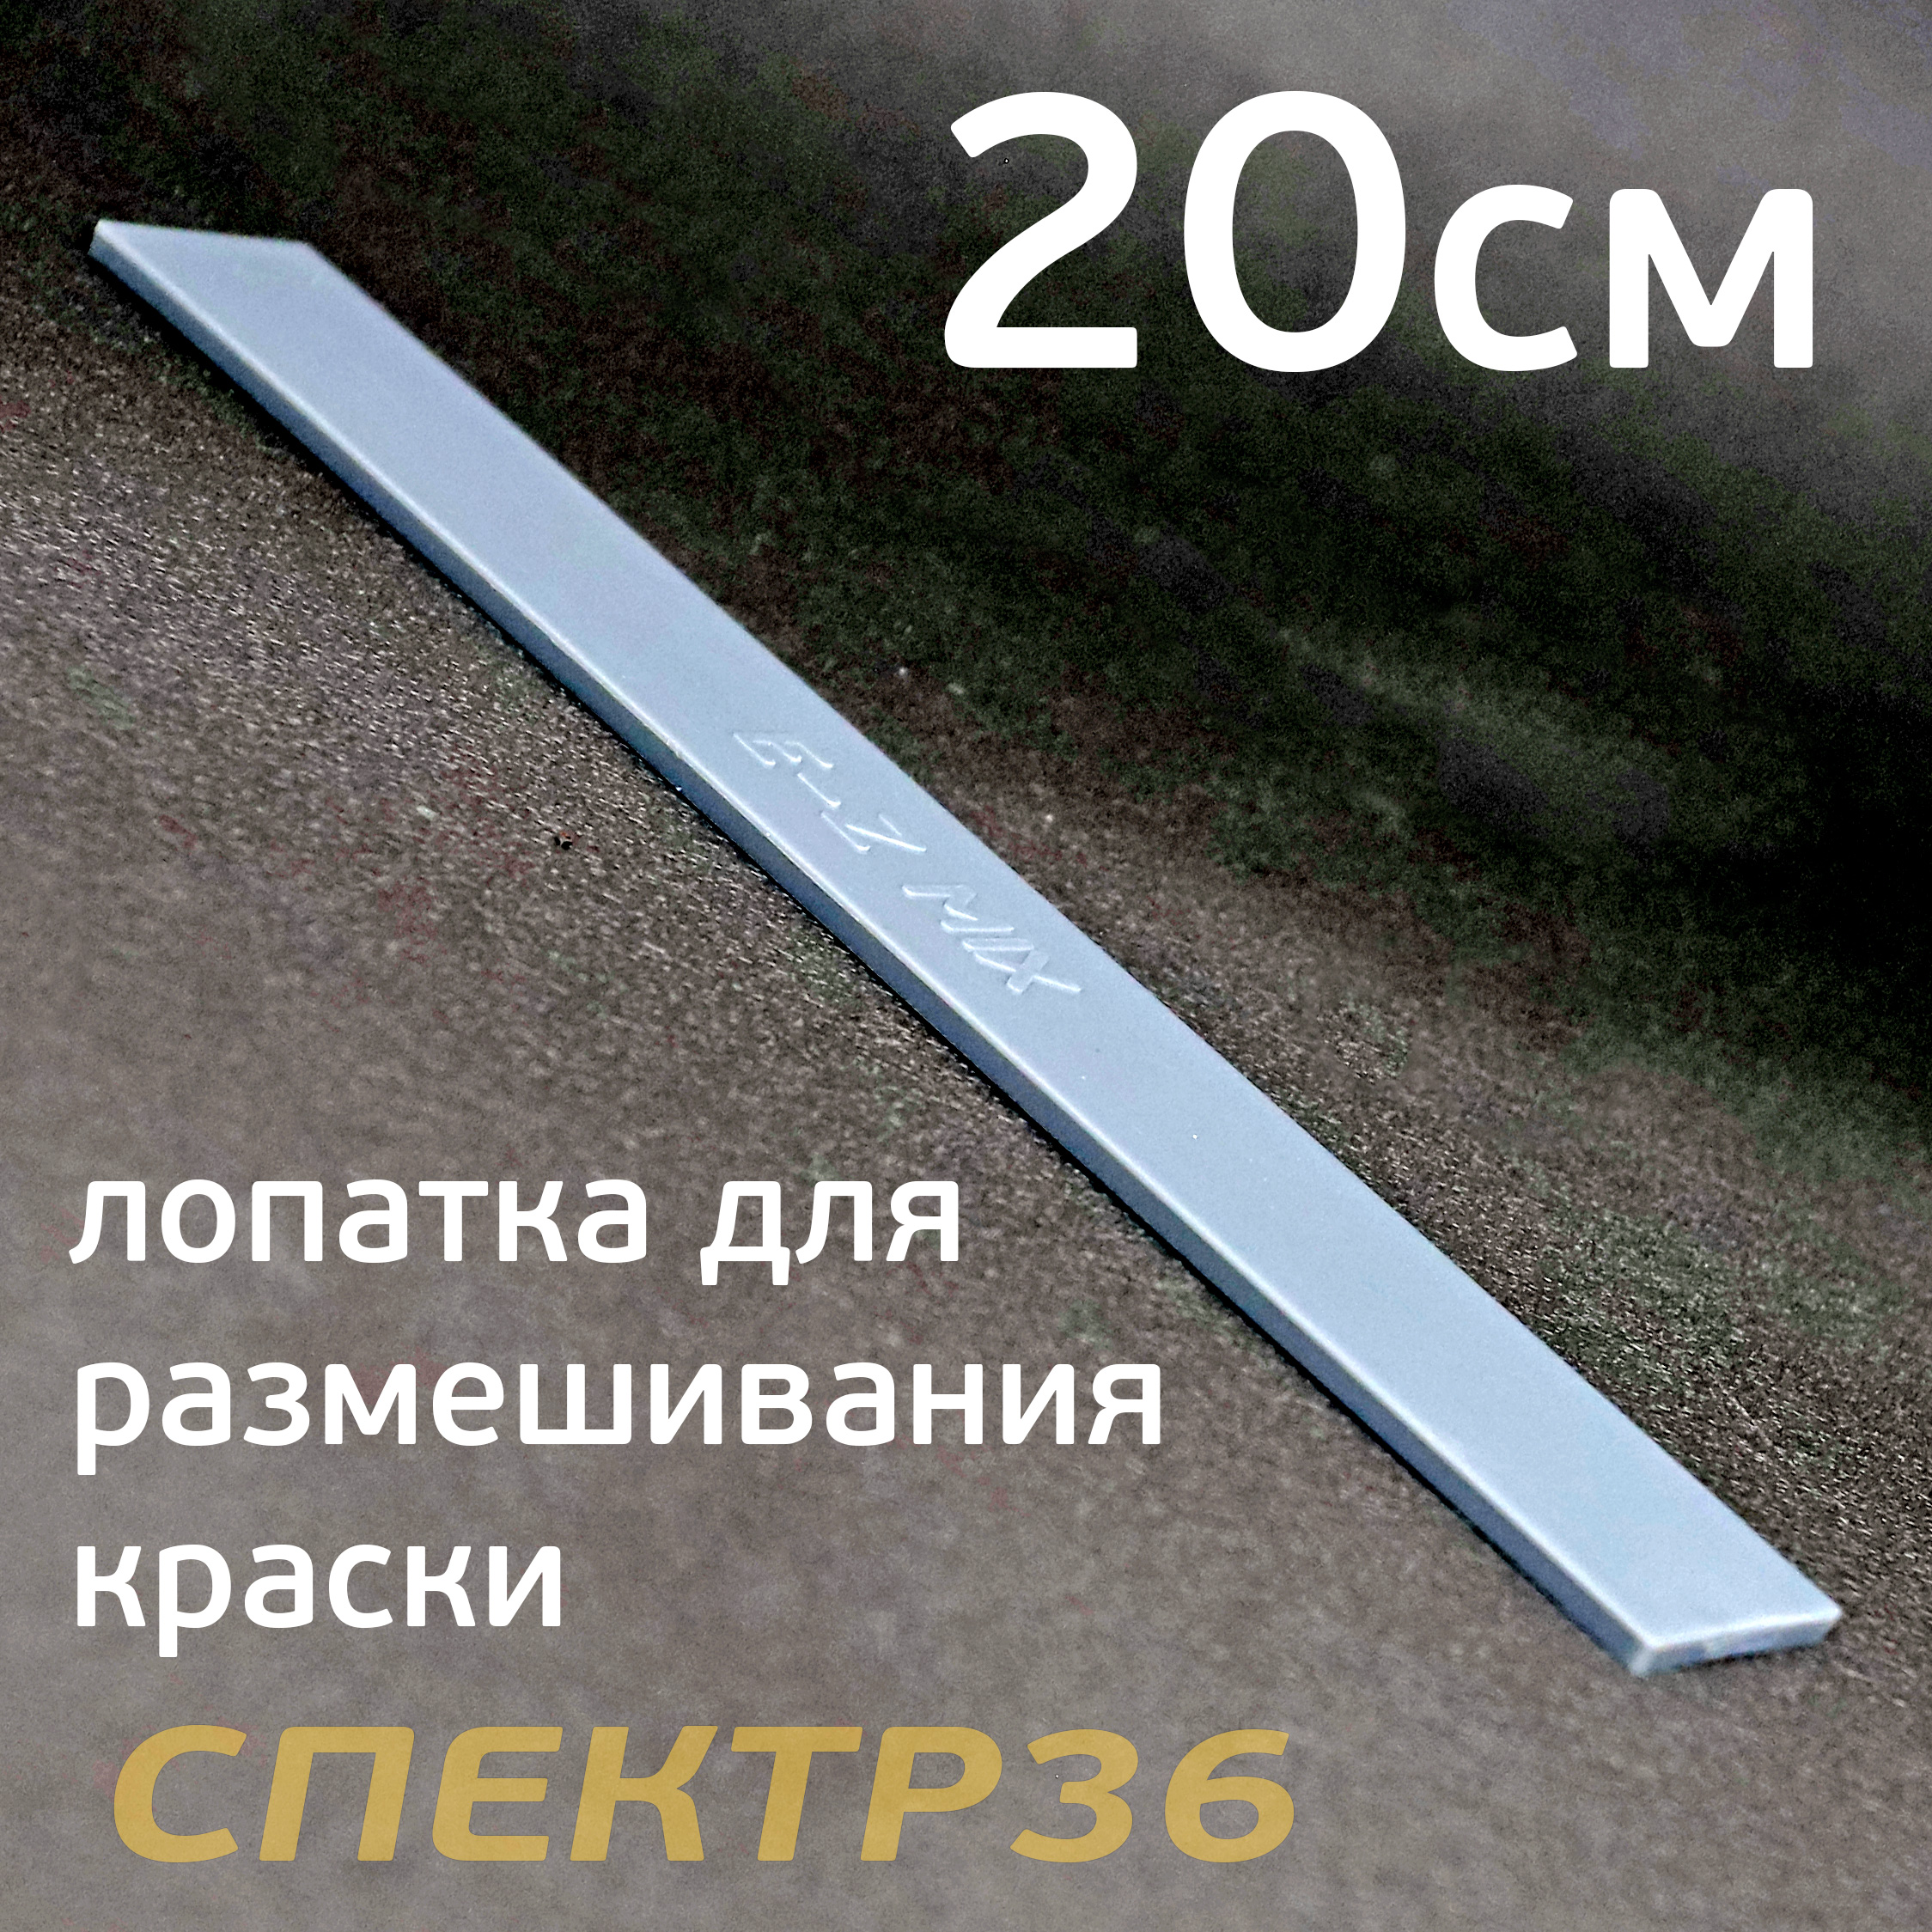 Палочка для размешивания краски E-Z MIX (20см) пластиковая